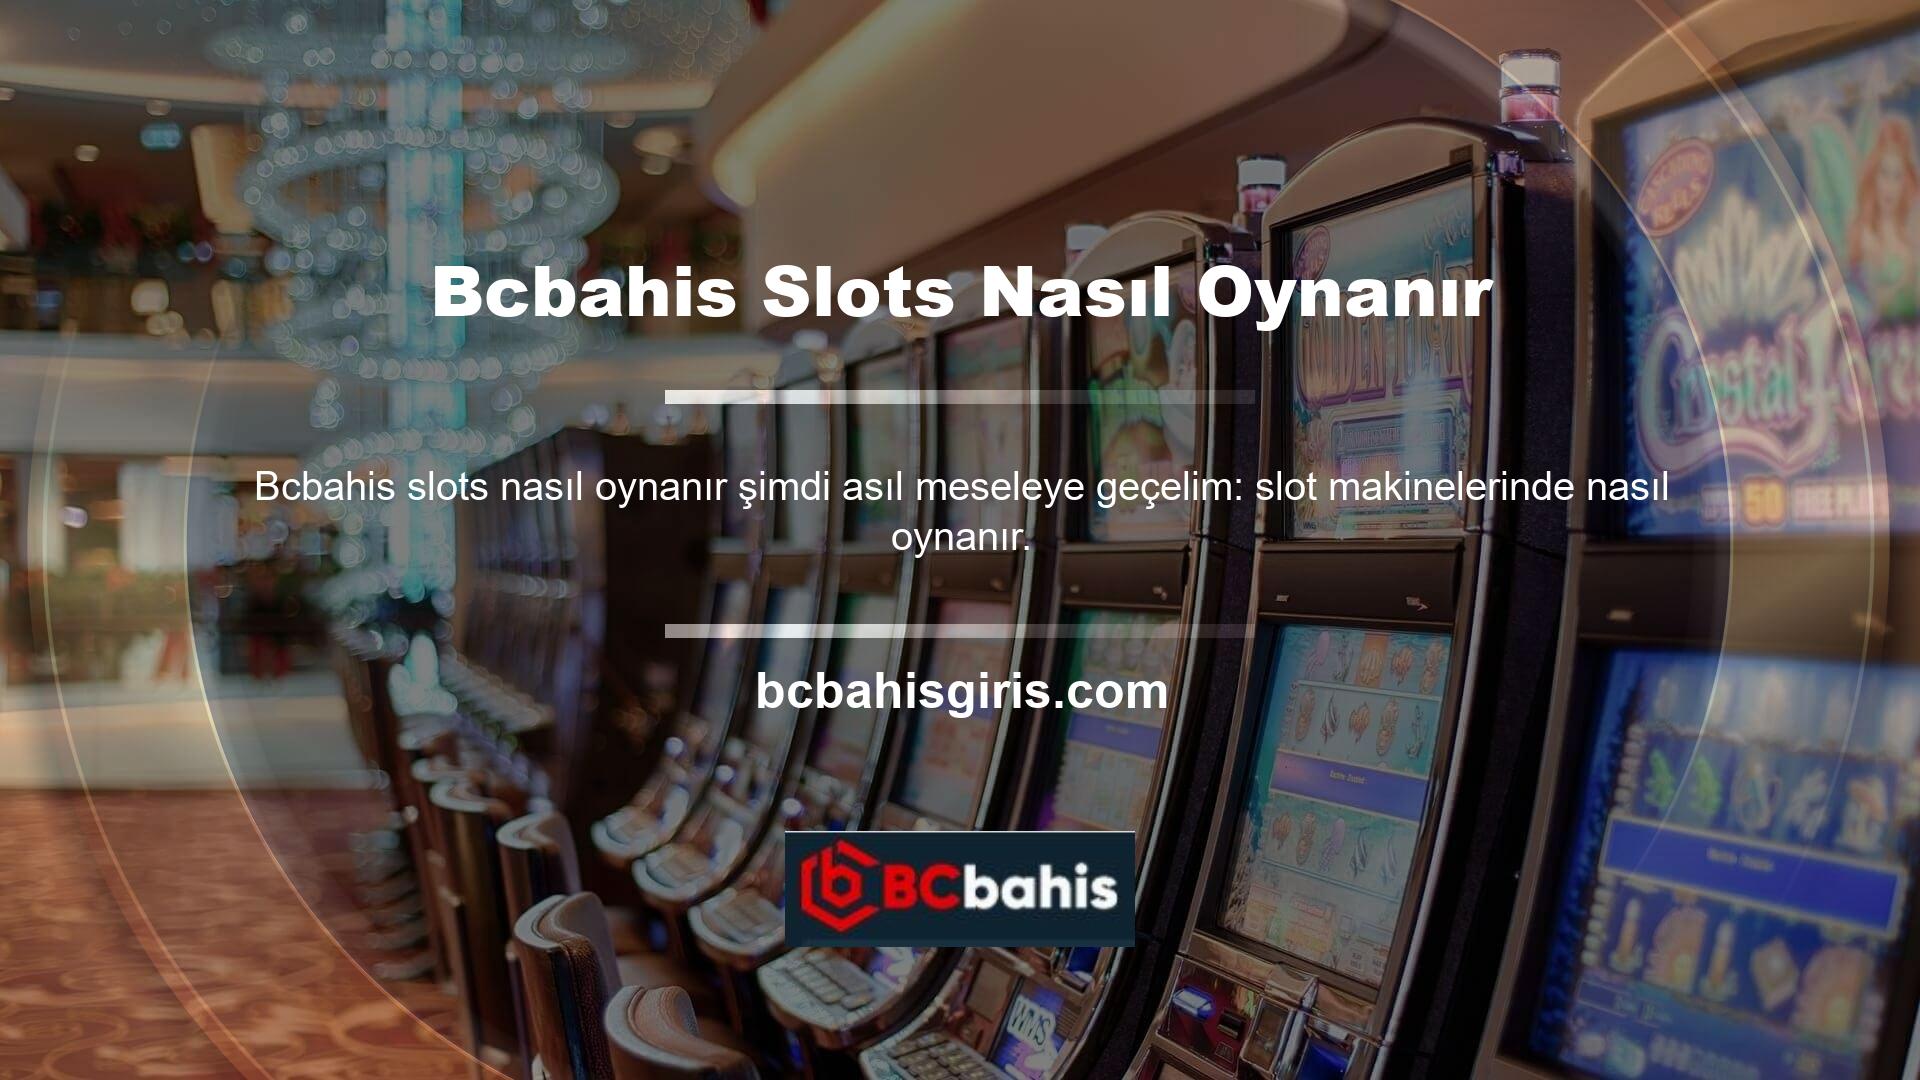 Bcbahis casinonun oyun seçenekleri makineleri basitlikleri ve rasyonellikleri ile karakterize edilir